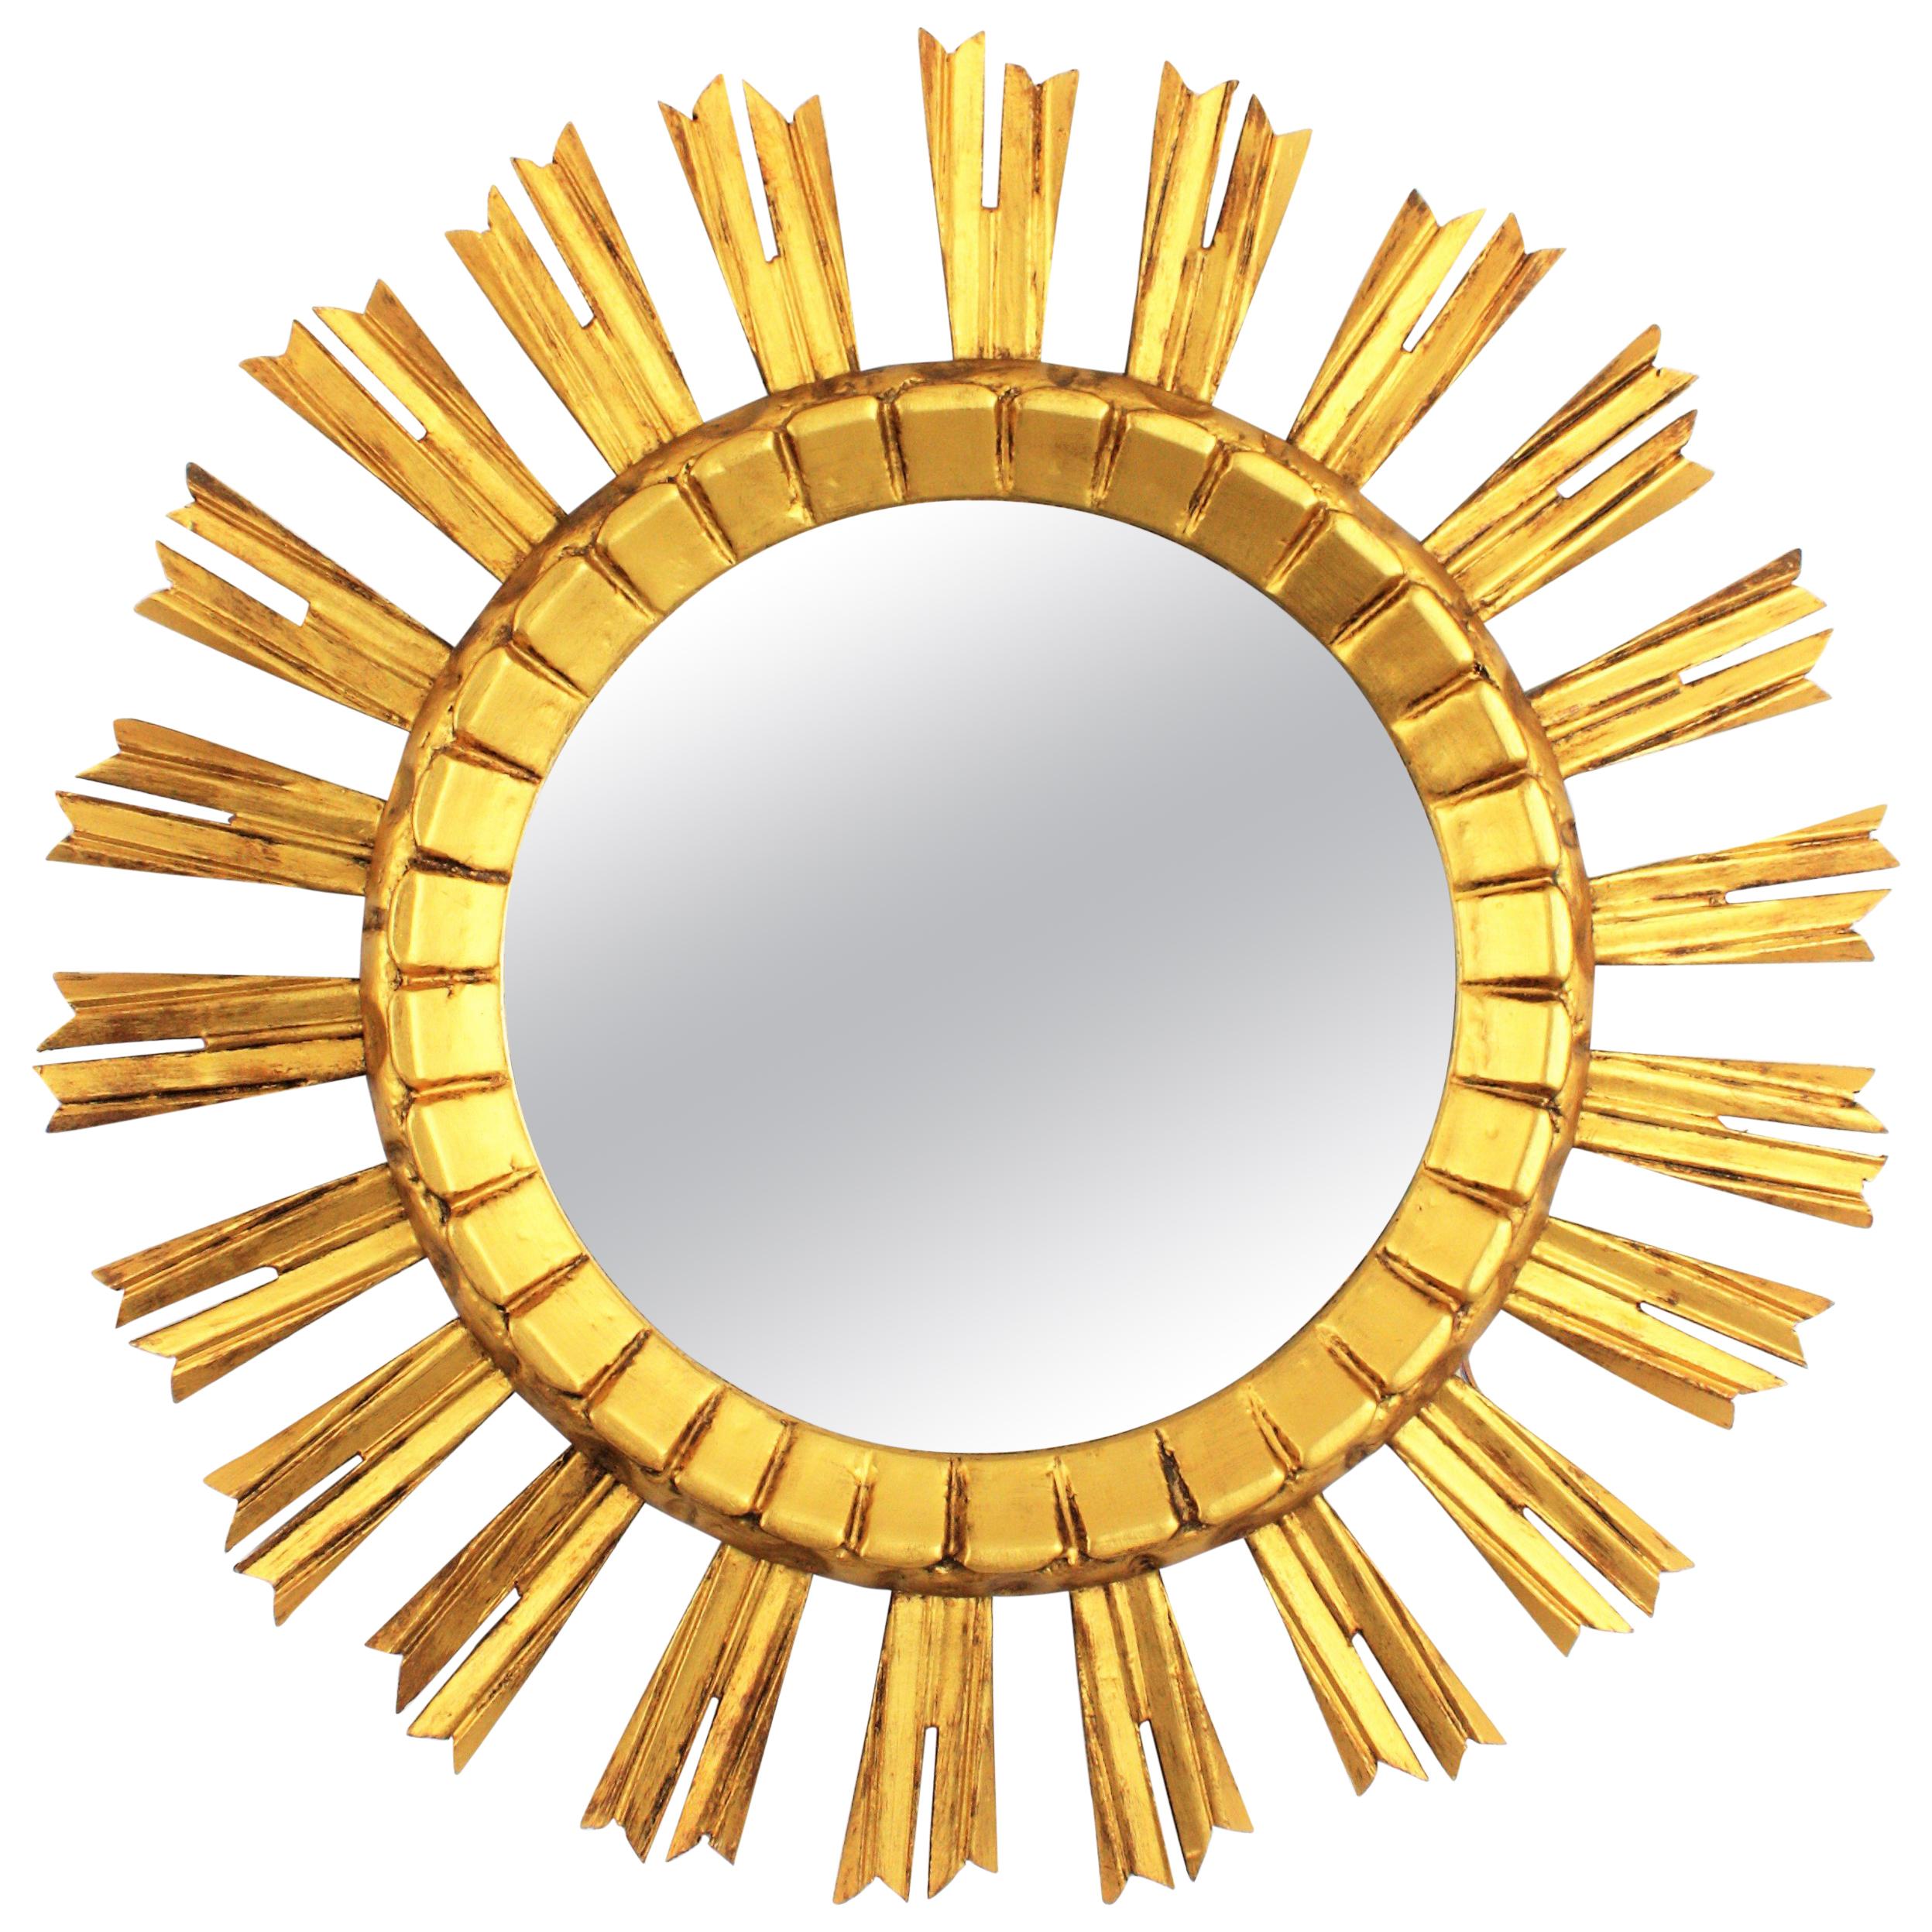 Miroir mural de style baroque à effet de soleil et d'étoile. France, années 1930. 
Le miroir est fait en bois sculpté, recouvert de gesso et a une finition dorée.
Ravissant à placer seul ou à créer une composition murale avec d'autres miroirs